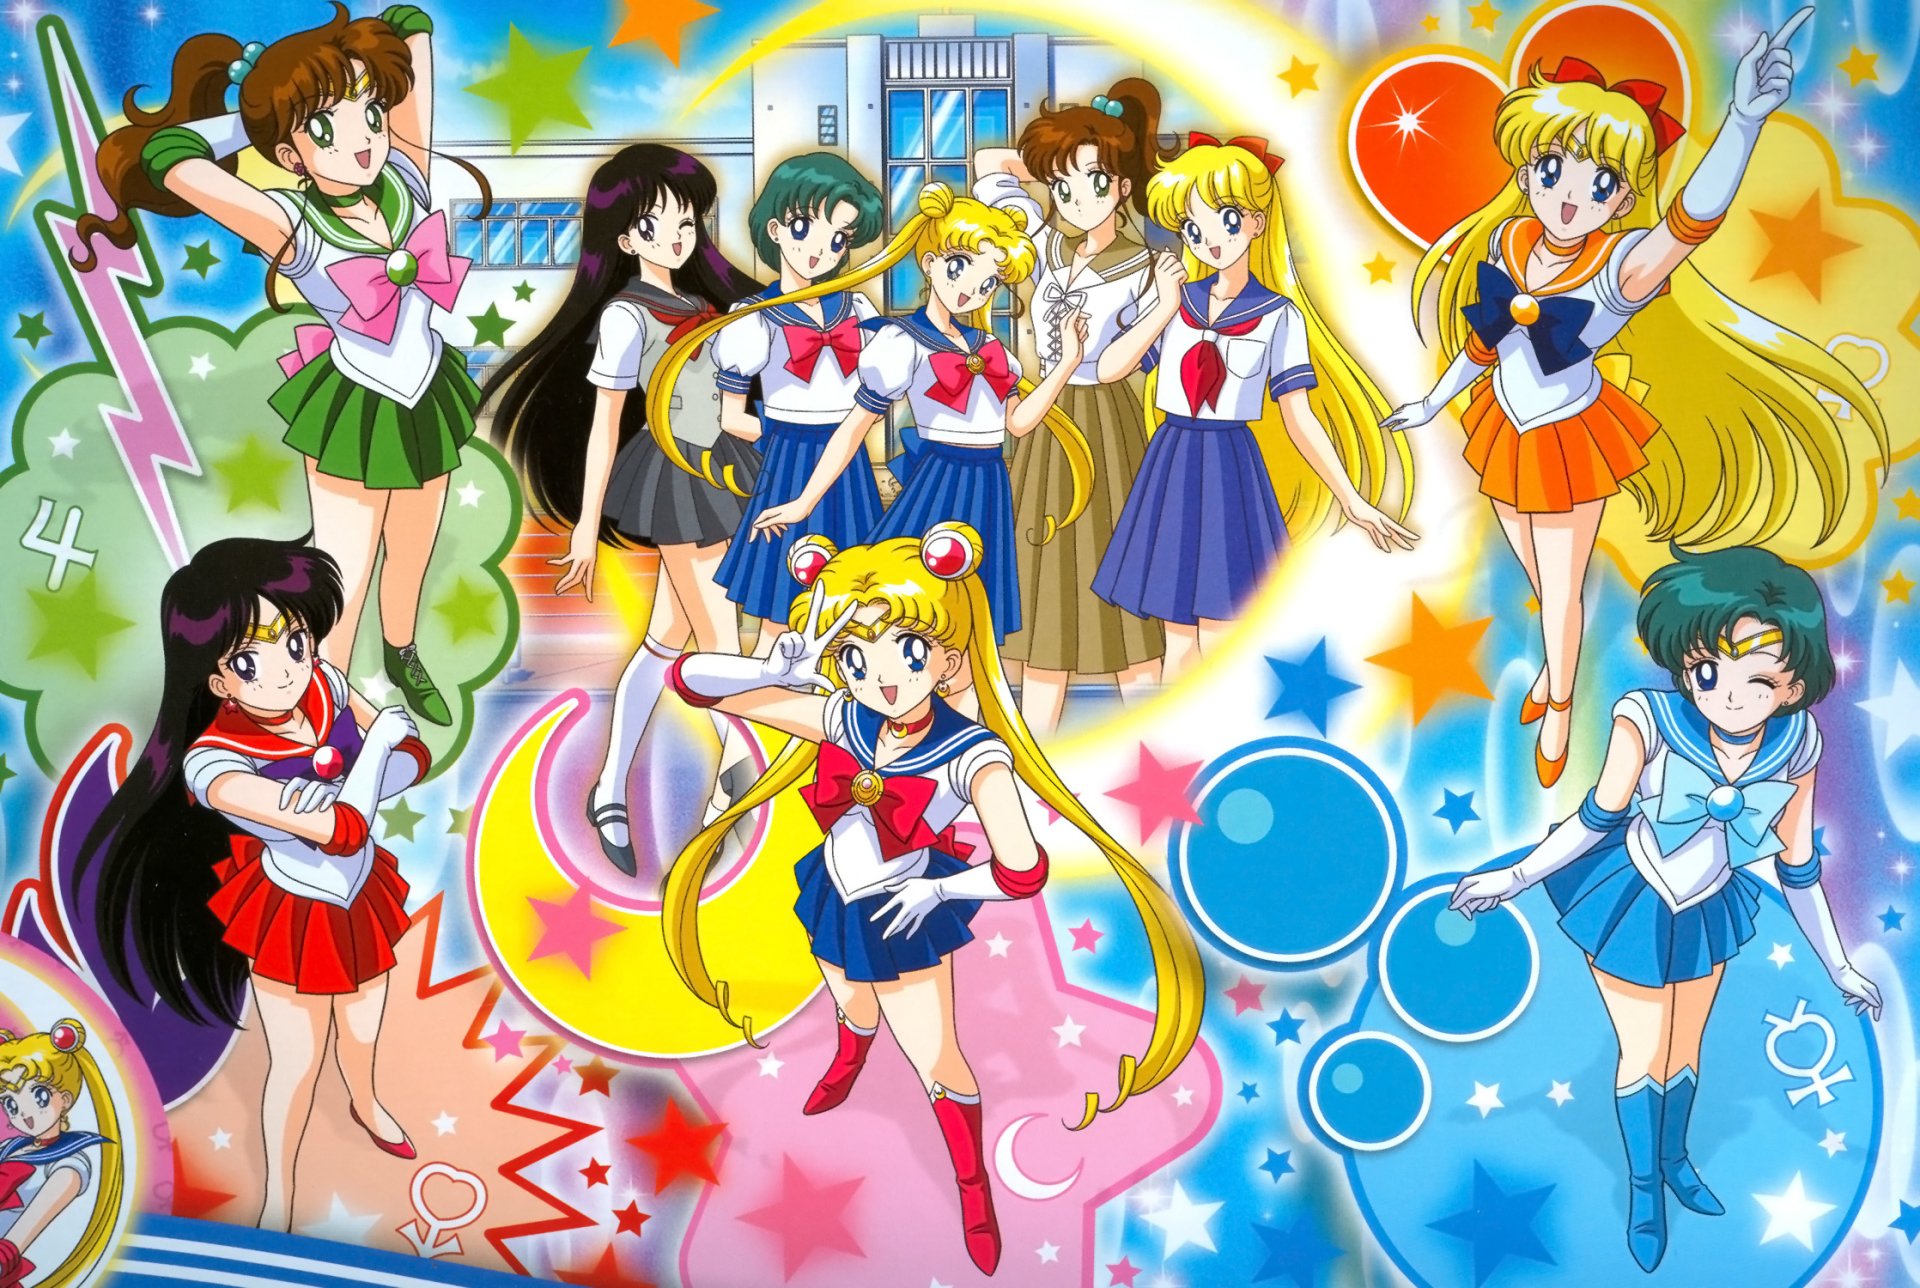 Fondos de Pantalla de Sailor Moon, Wallpapers